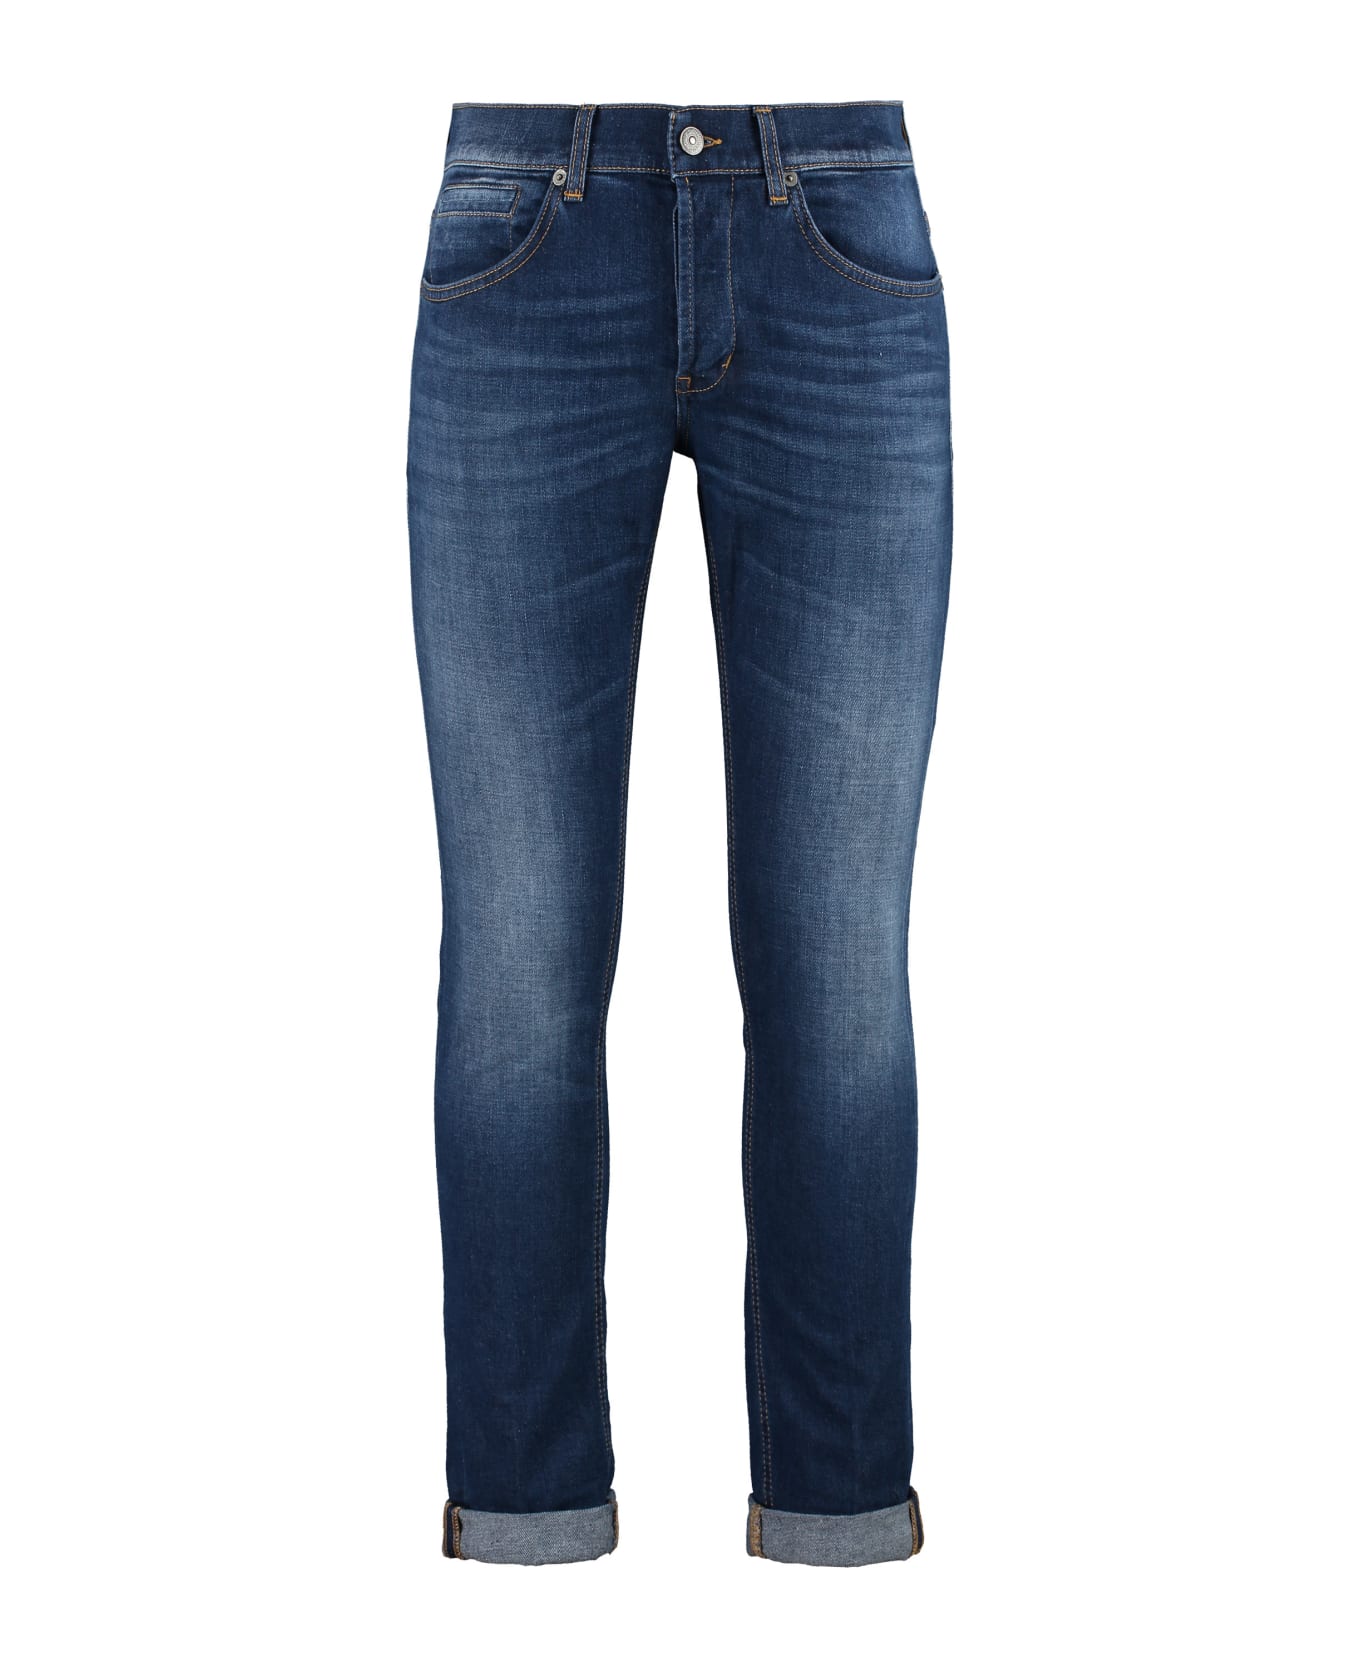 Dondup George 5-pocket Jeans - Denim